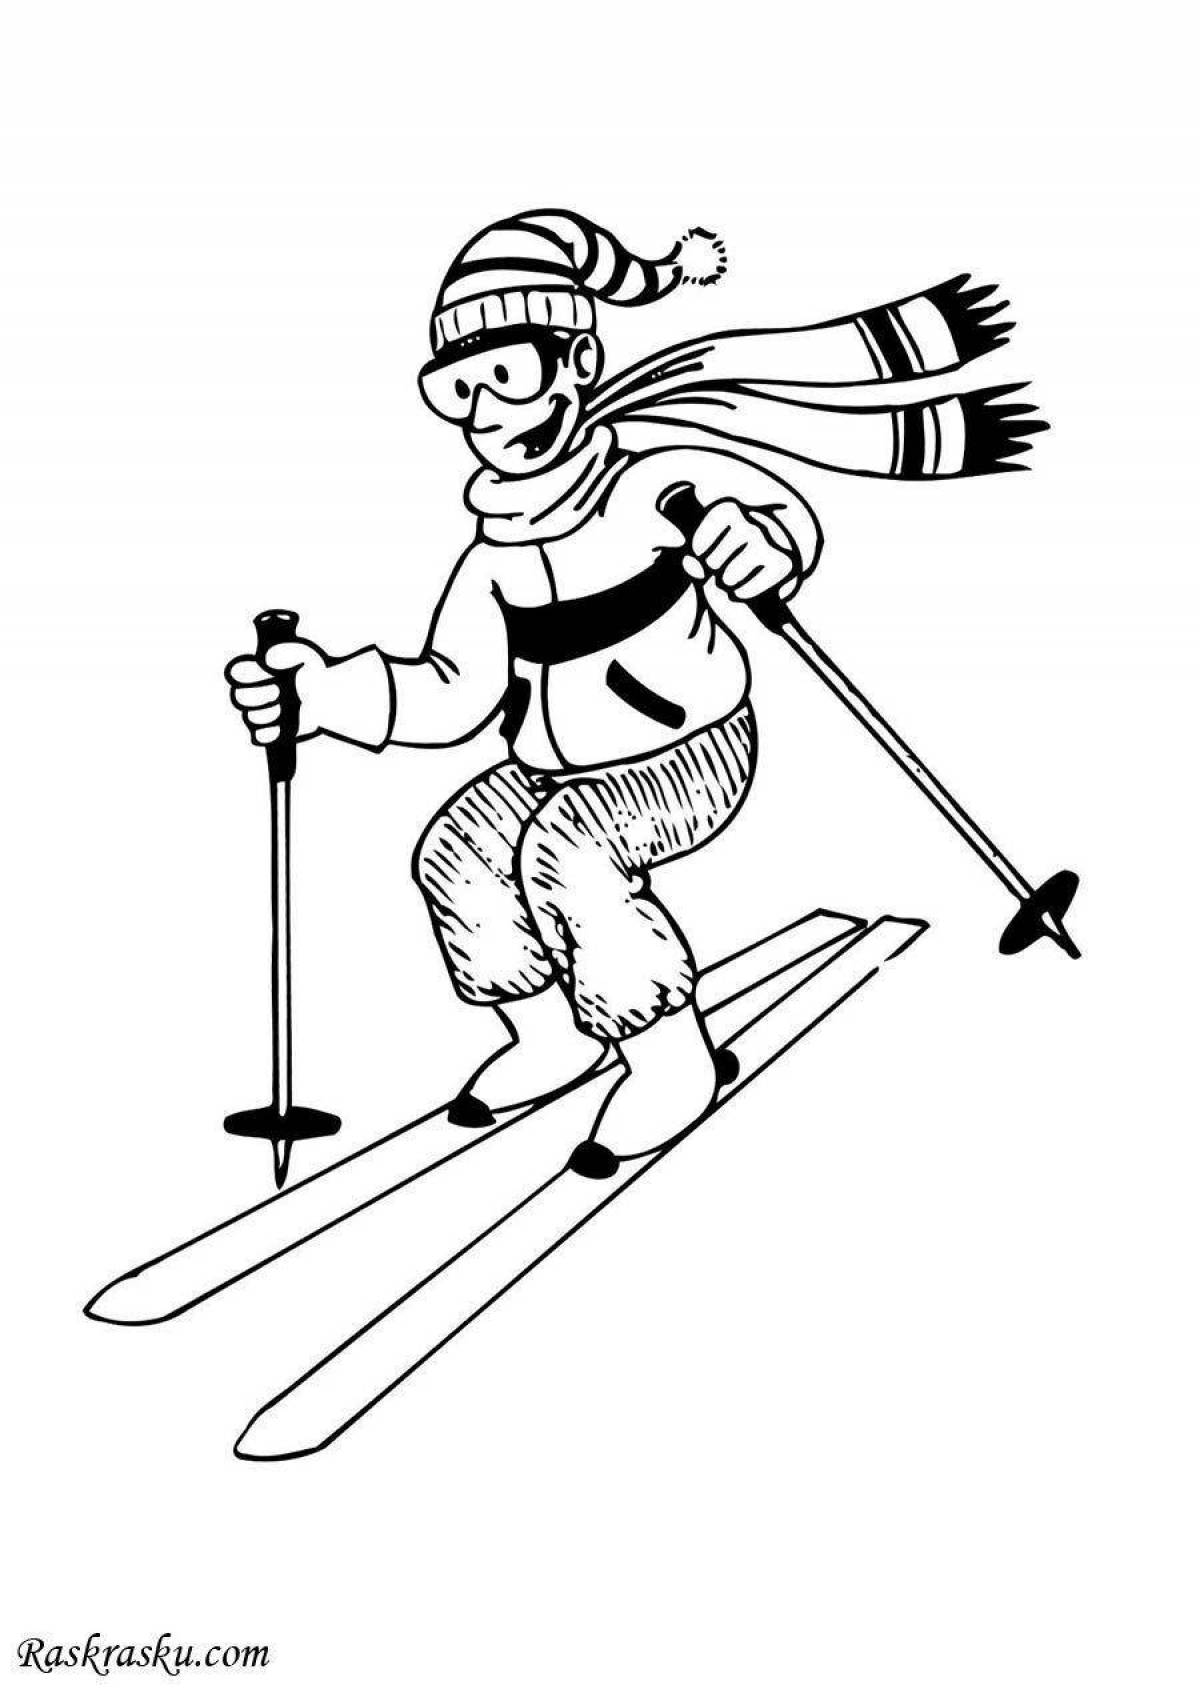 Fantastic skis for kids